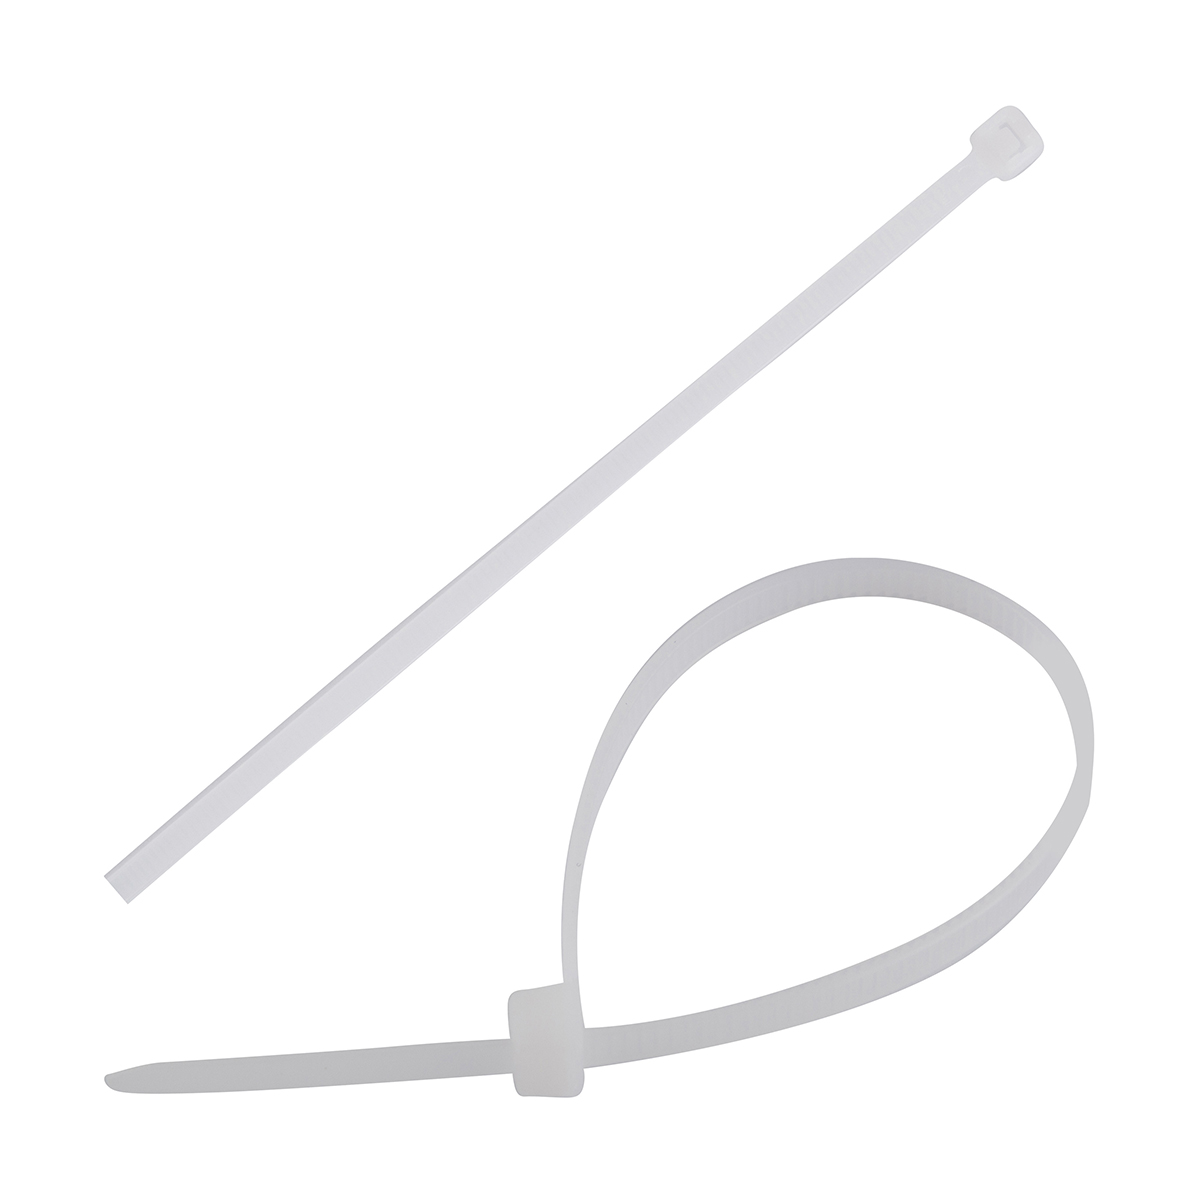 Хомуты нейлон 3,6 х 150 мм (набор 100 шт.) Белые  PARK кабельные хомуты cimco